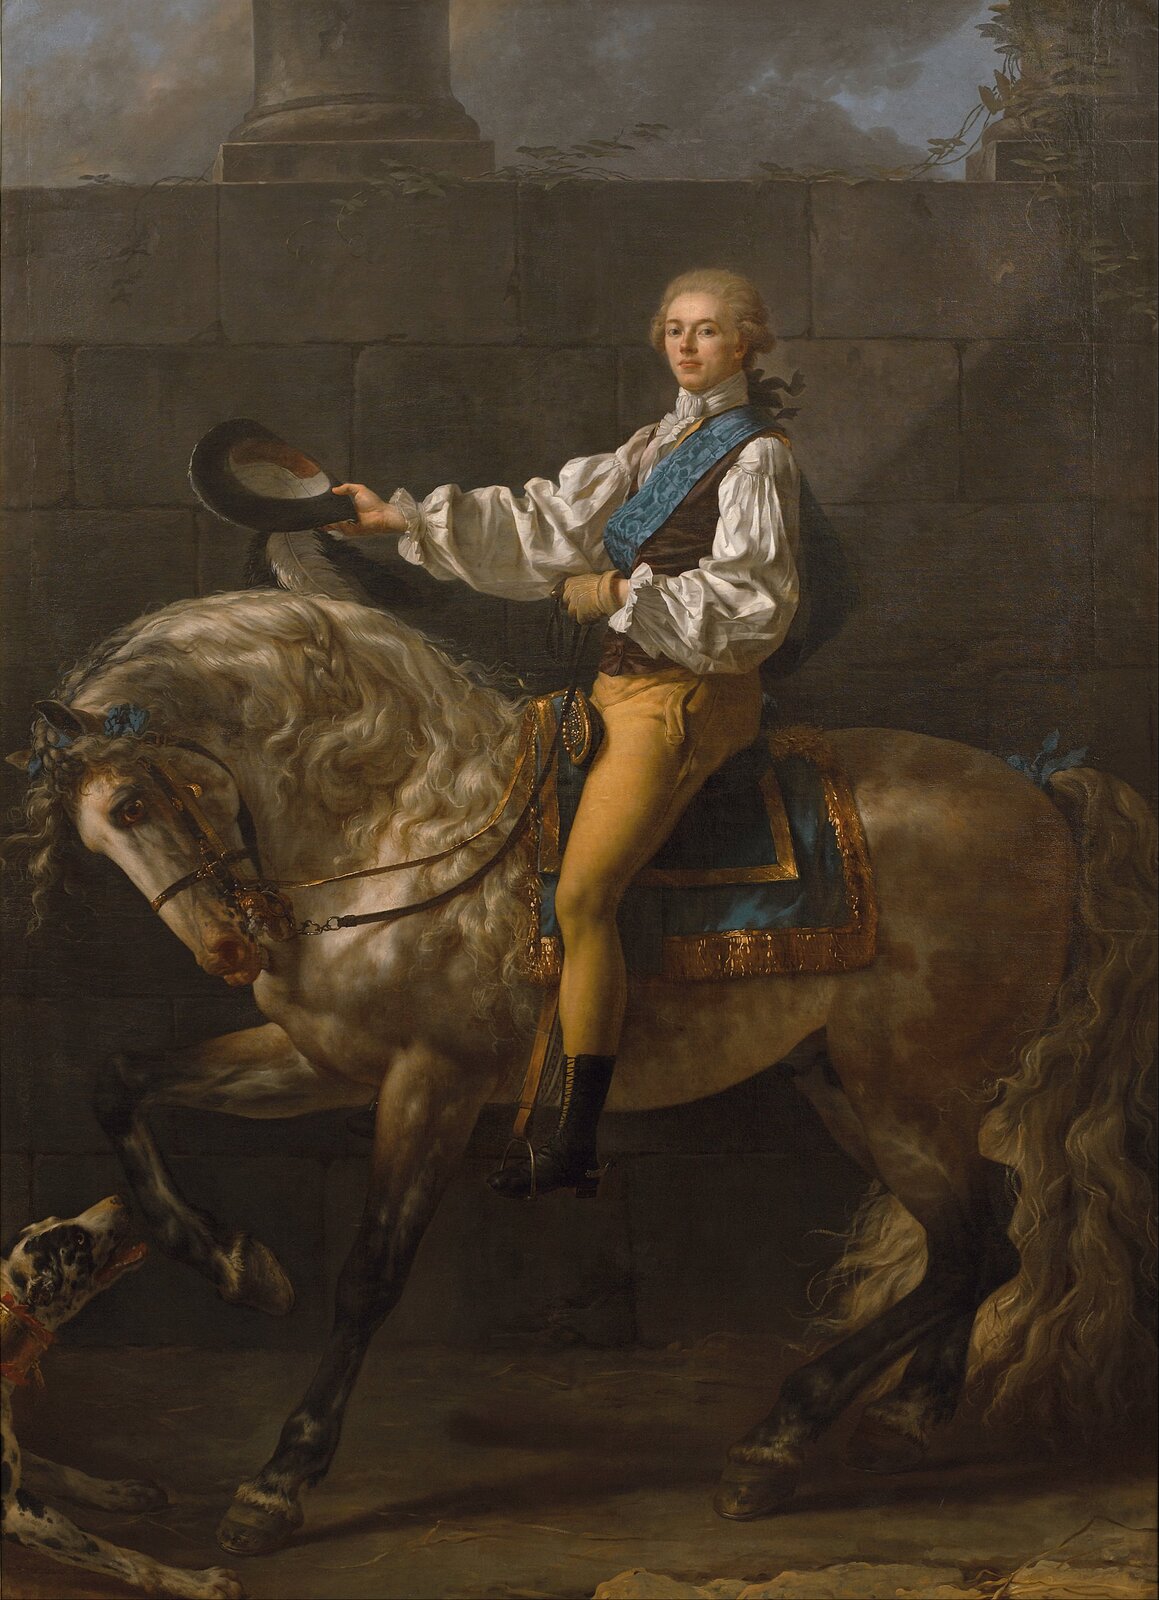 Ilustracja o kształcie pionowego prostokąta przedstawia obraz Jacquesa Louisa Davida „Portret konny Stanisława Kostki Potockiego”. Ukazuje  hrabiego w uroczystym stroju na koniu. Potocki ma na głowie perukę w jasnym kolorze. Jedną ręką trzyma lejce, drugą wyprostowaną nad szyją konia, kapelusz ozdobiony trzema piórami. Jest ubrany w koszulę o szerokich rękawach z mankietami ozdobionymi falbanką oraz kamizelkę. Pod szyją ma żabot. Przez lewe ramię hrabia przełożył szarfę Orderu Orła Białego. Koń prawą nogę unosi do góry, bawiąc się z psem. Tłem jest mur z ciosów kamiennych, na którym stoi kolumna. Za nim widać fragment pejzażu z ciemnym niebem. 